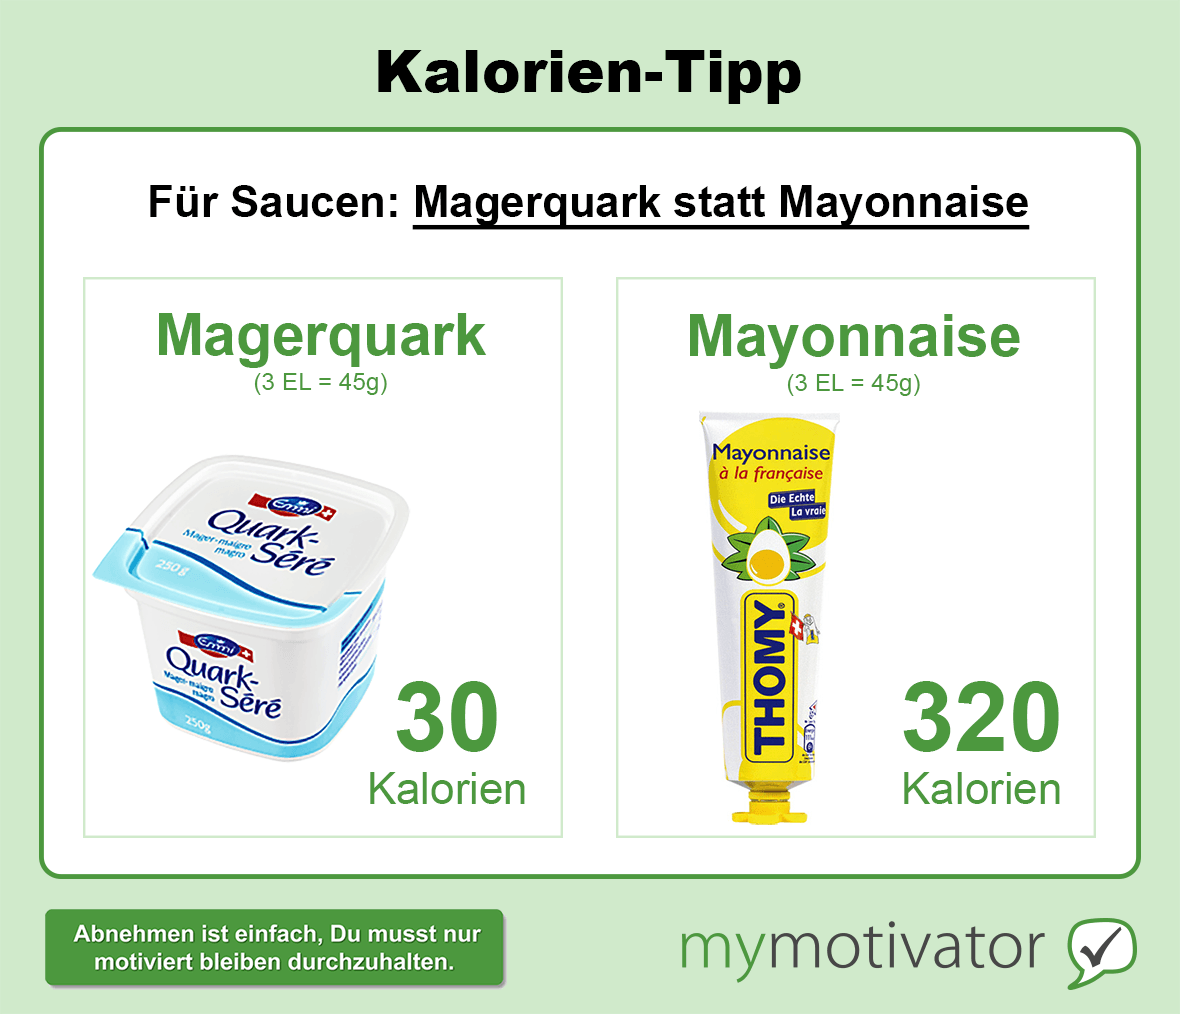 Für Saucen: Magerquark statt Mayonnaise